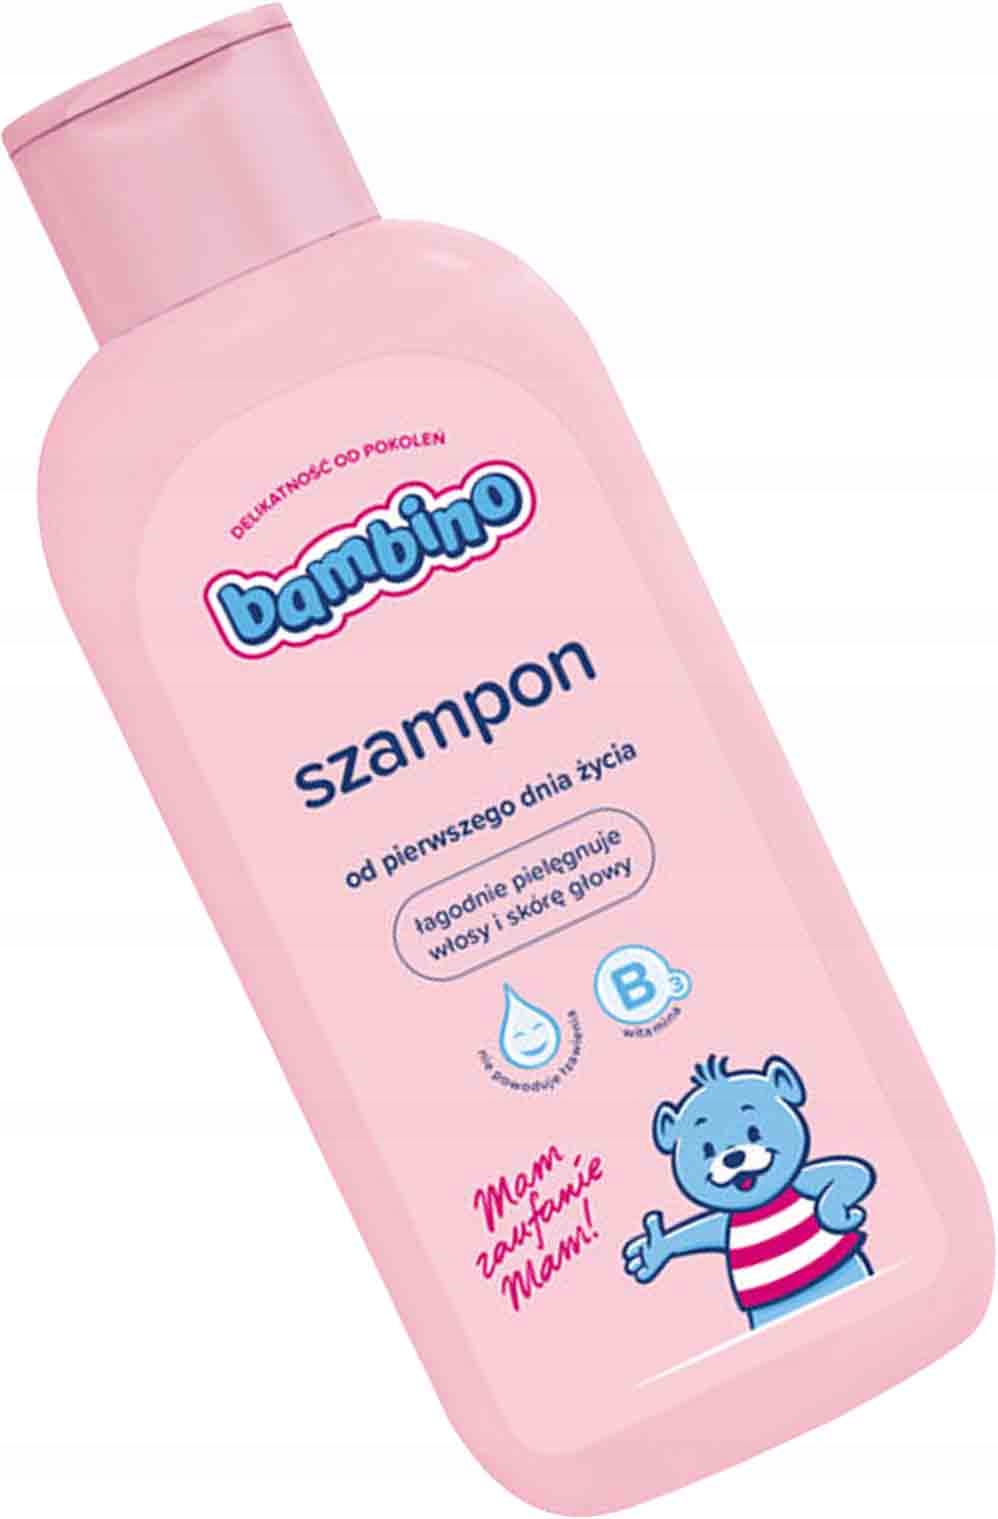 szampon dla.chlopcow